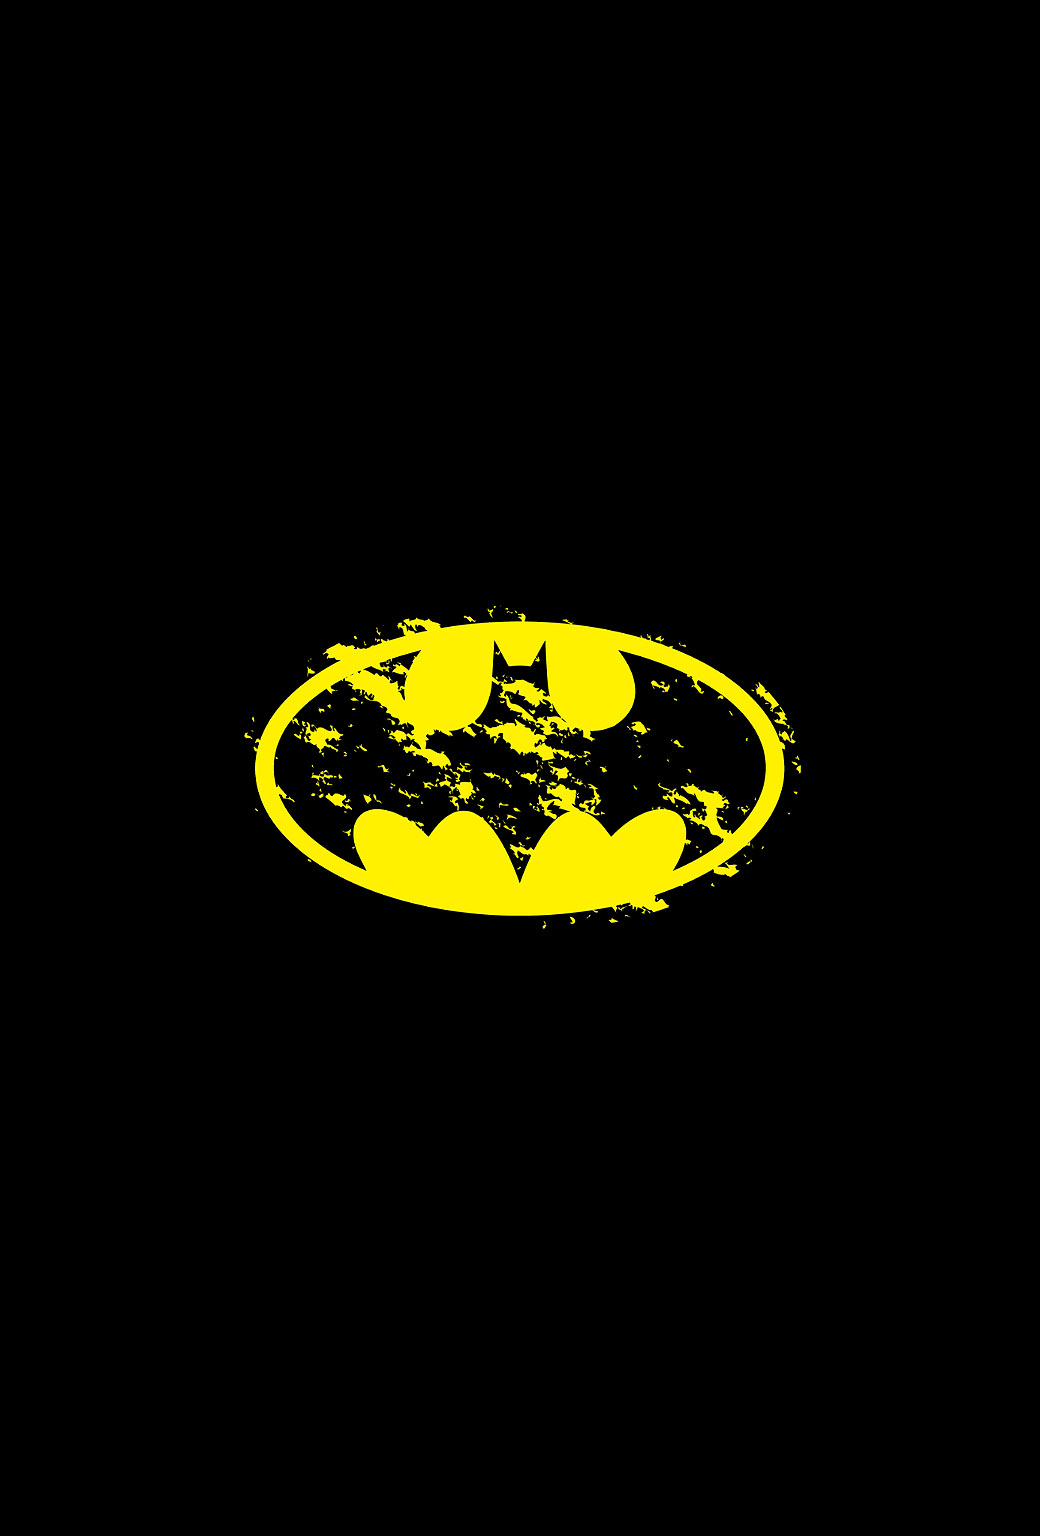 batman logo iphone wallpaper,schwarz,gelb,batman,emblem,schriftart